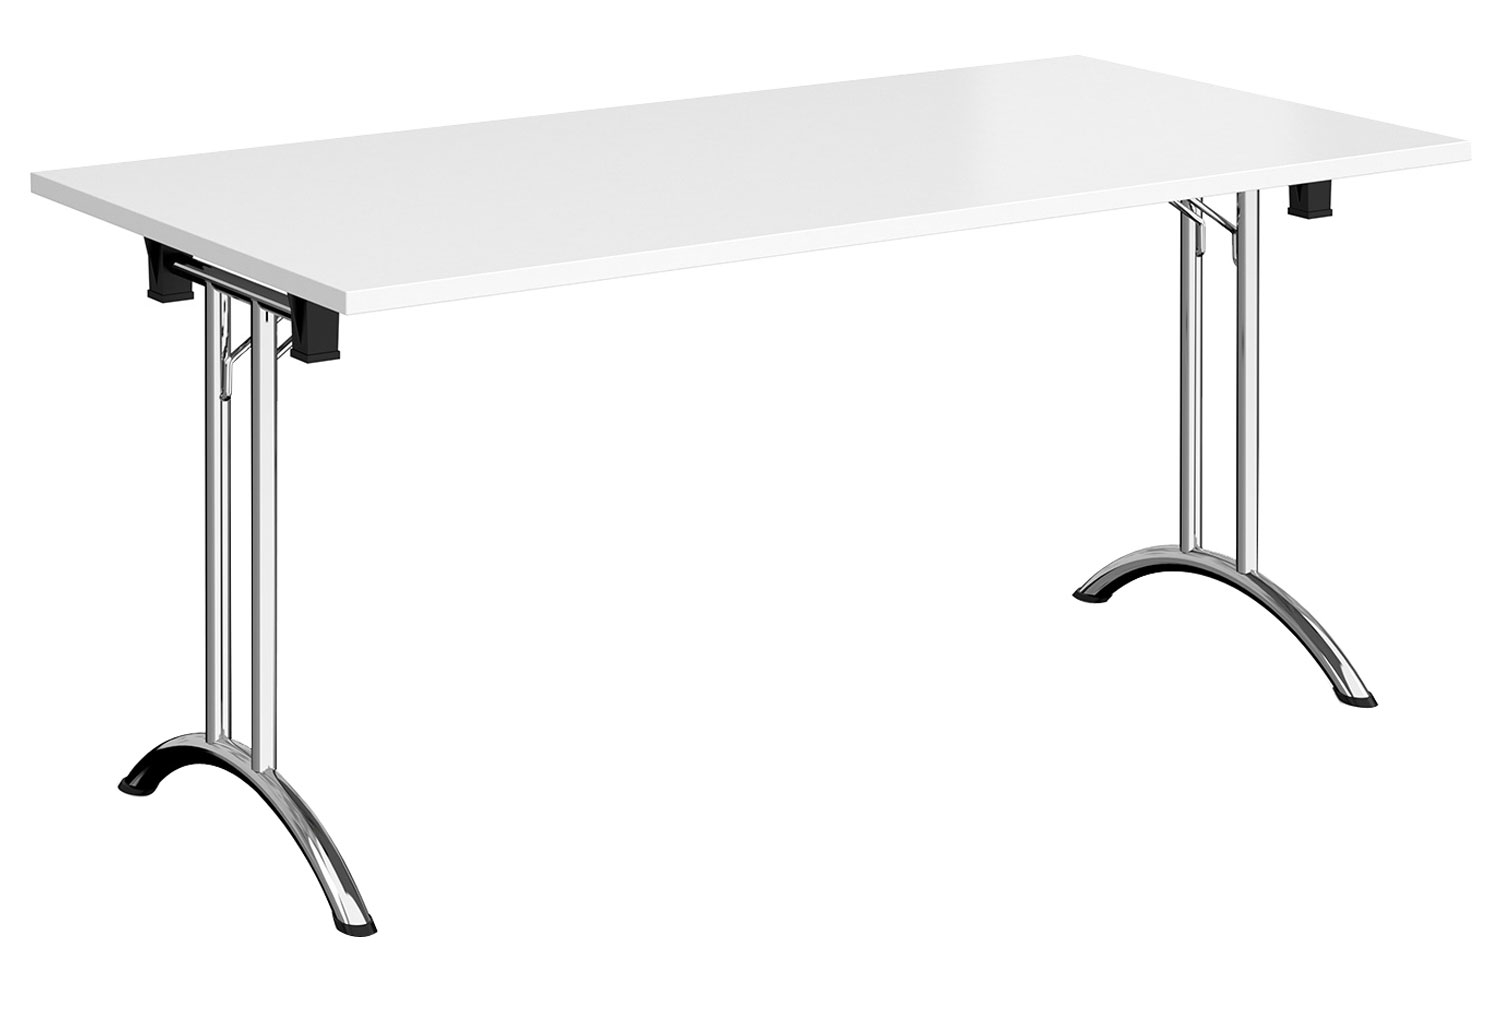 Zeeland Rectangular Folding Table, 160wx80dx73h (cm), Chrome Frame, White